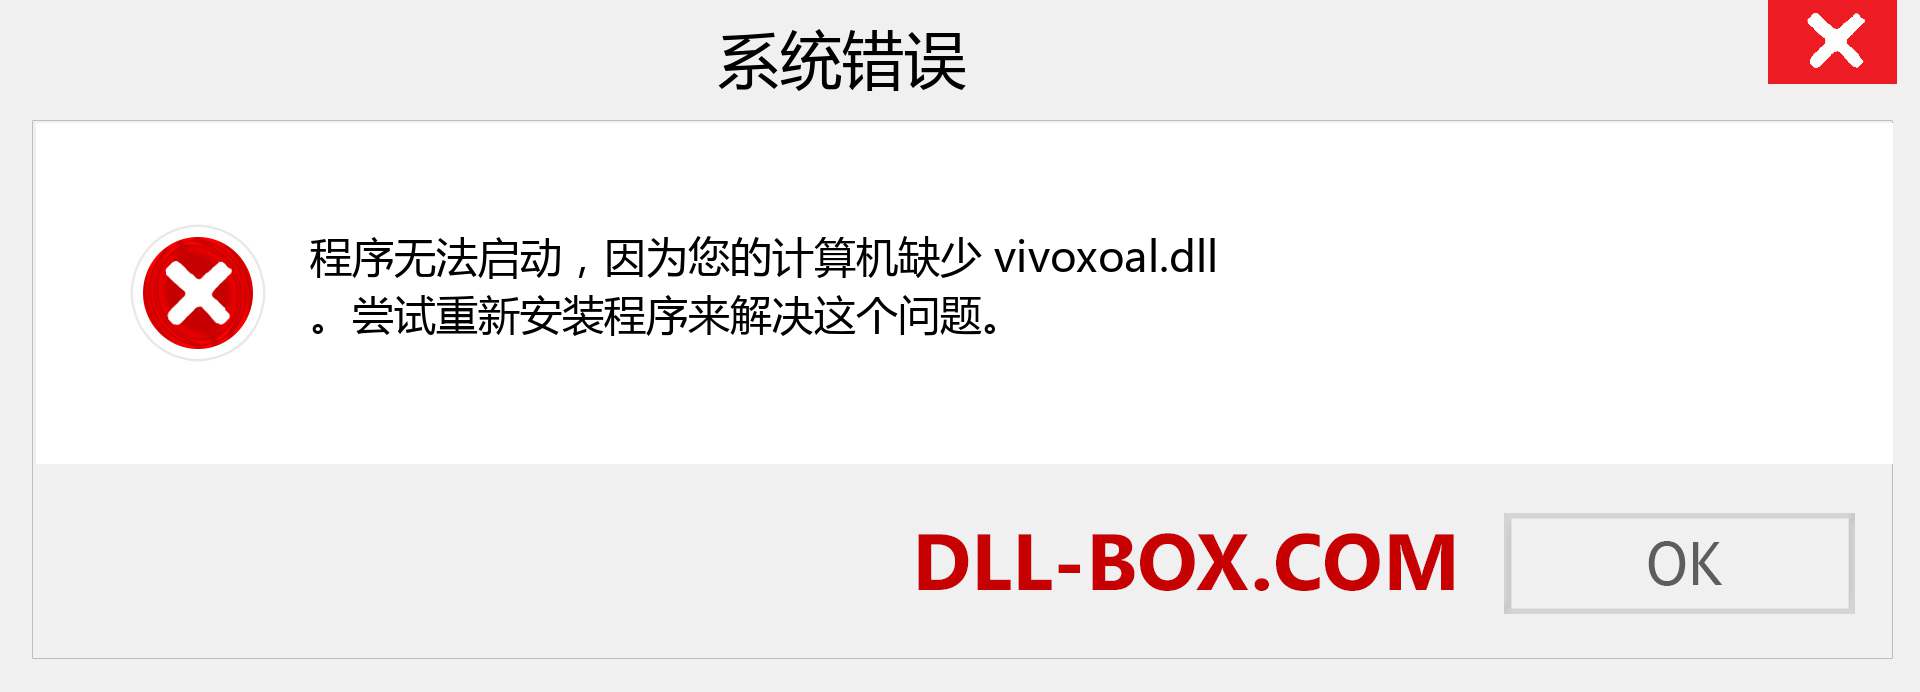 vivoxoal.dll 文件丢失？。 适用于 Windows 7、8、10 的下载 - 修复 Windows、照片、图像上的 vivoxoal dll 丢失错误